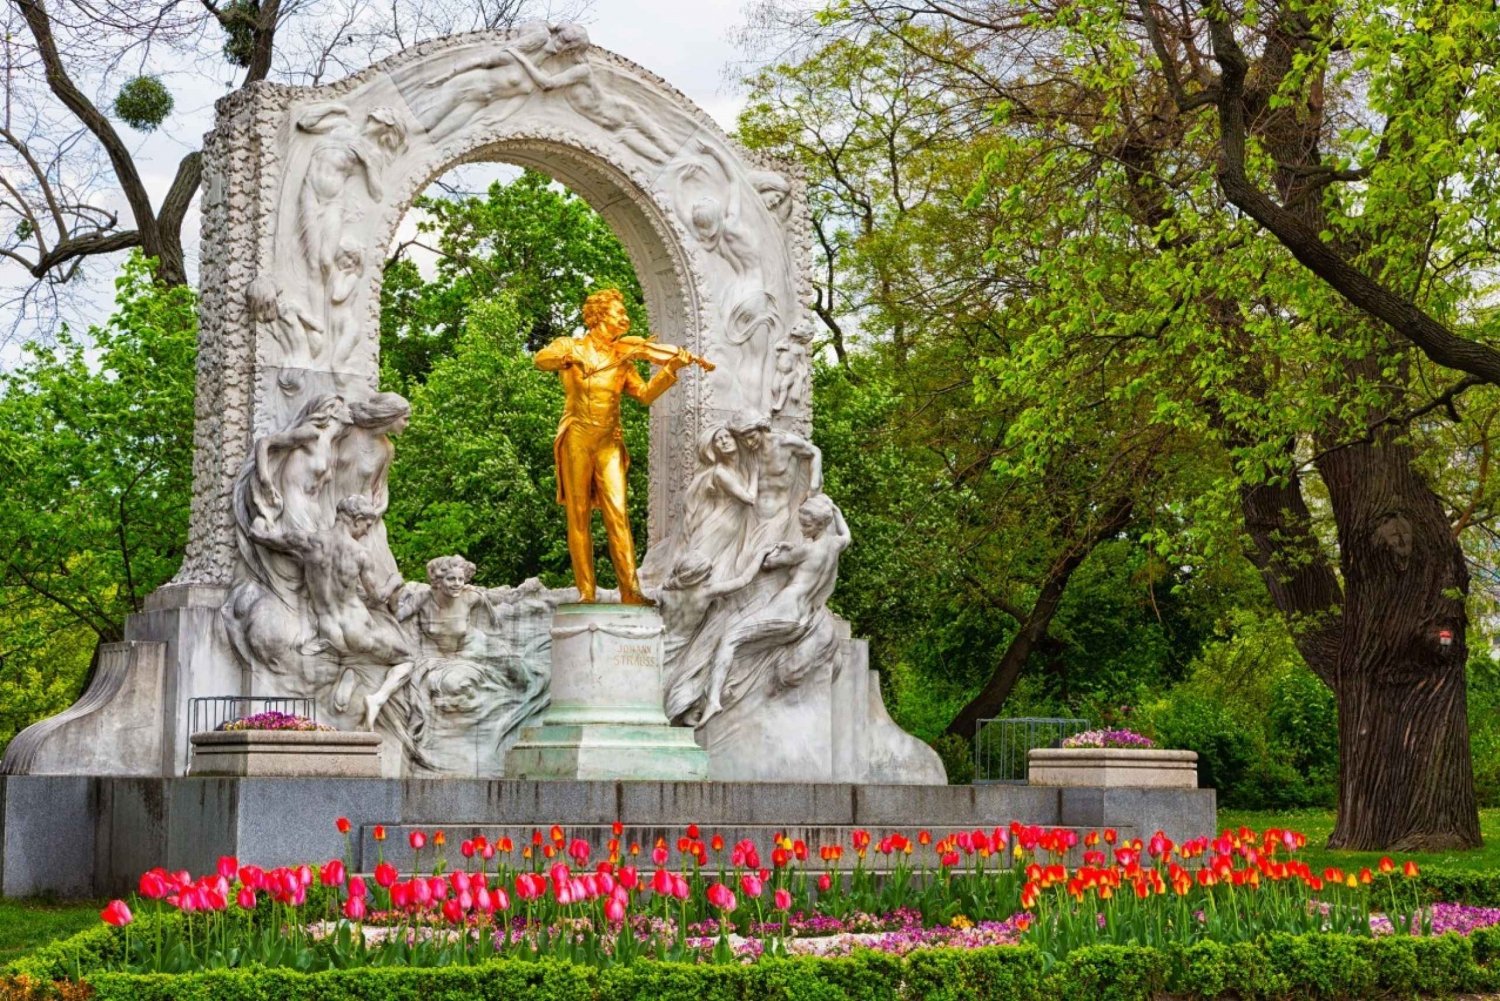 Vienne : Rencontre avec Strauss - Visite guidée privée à pied